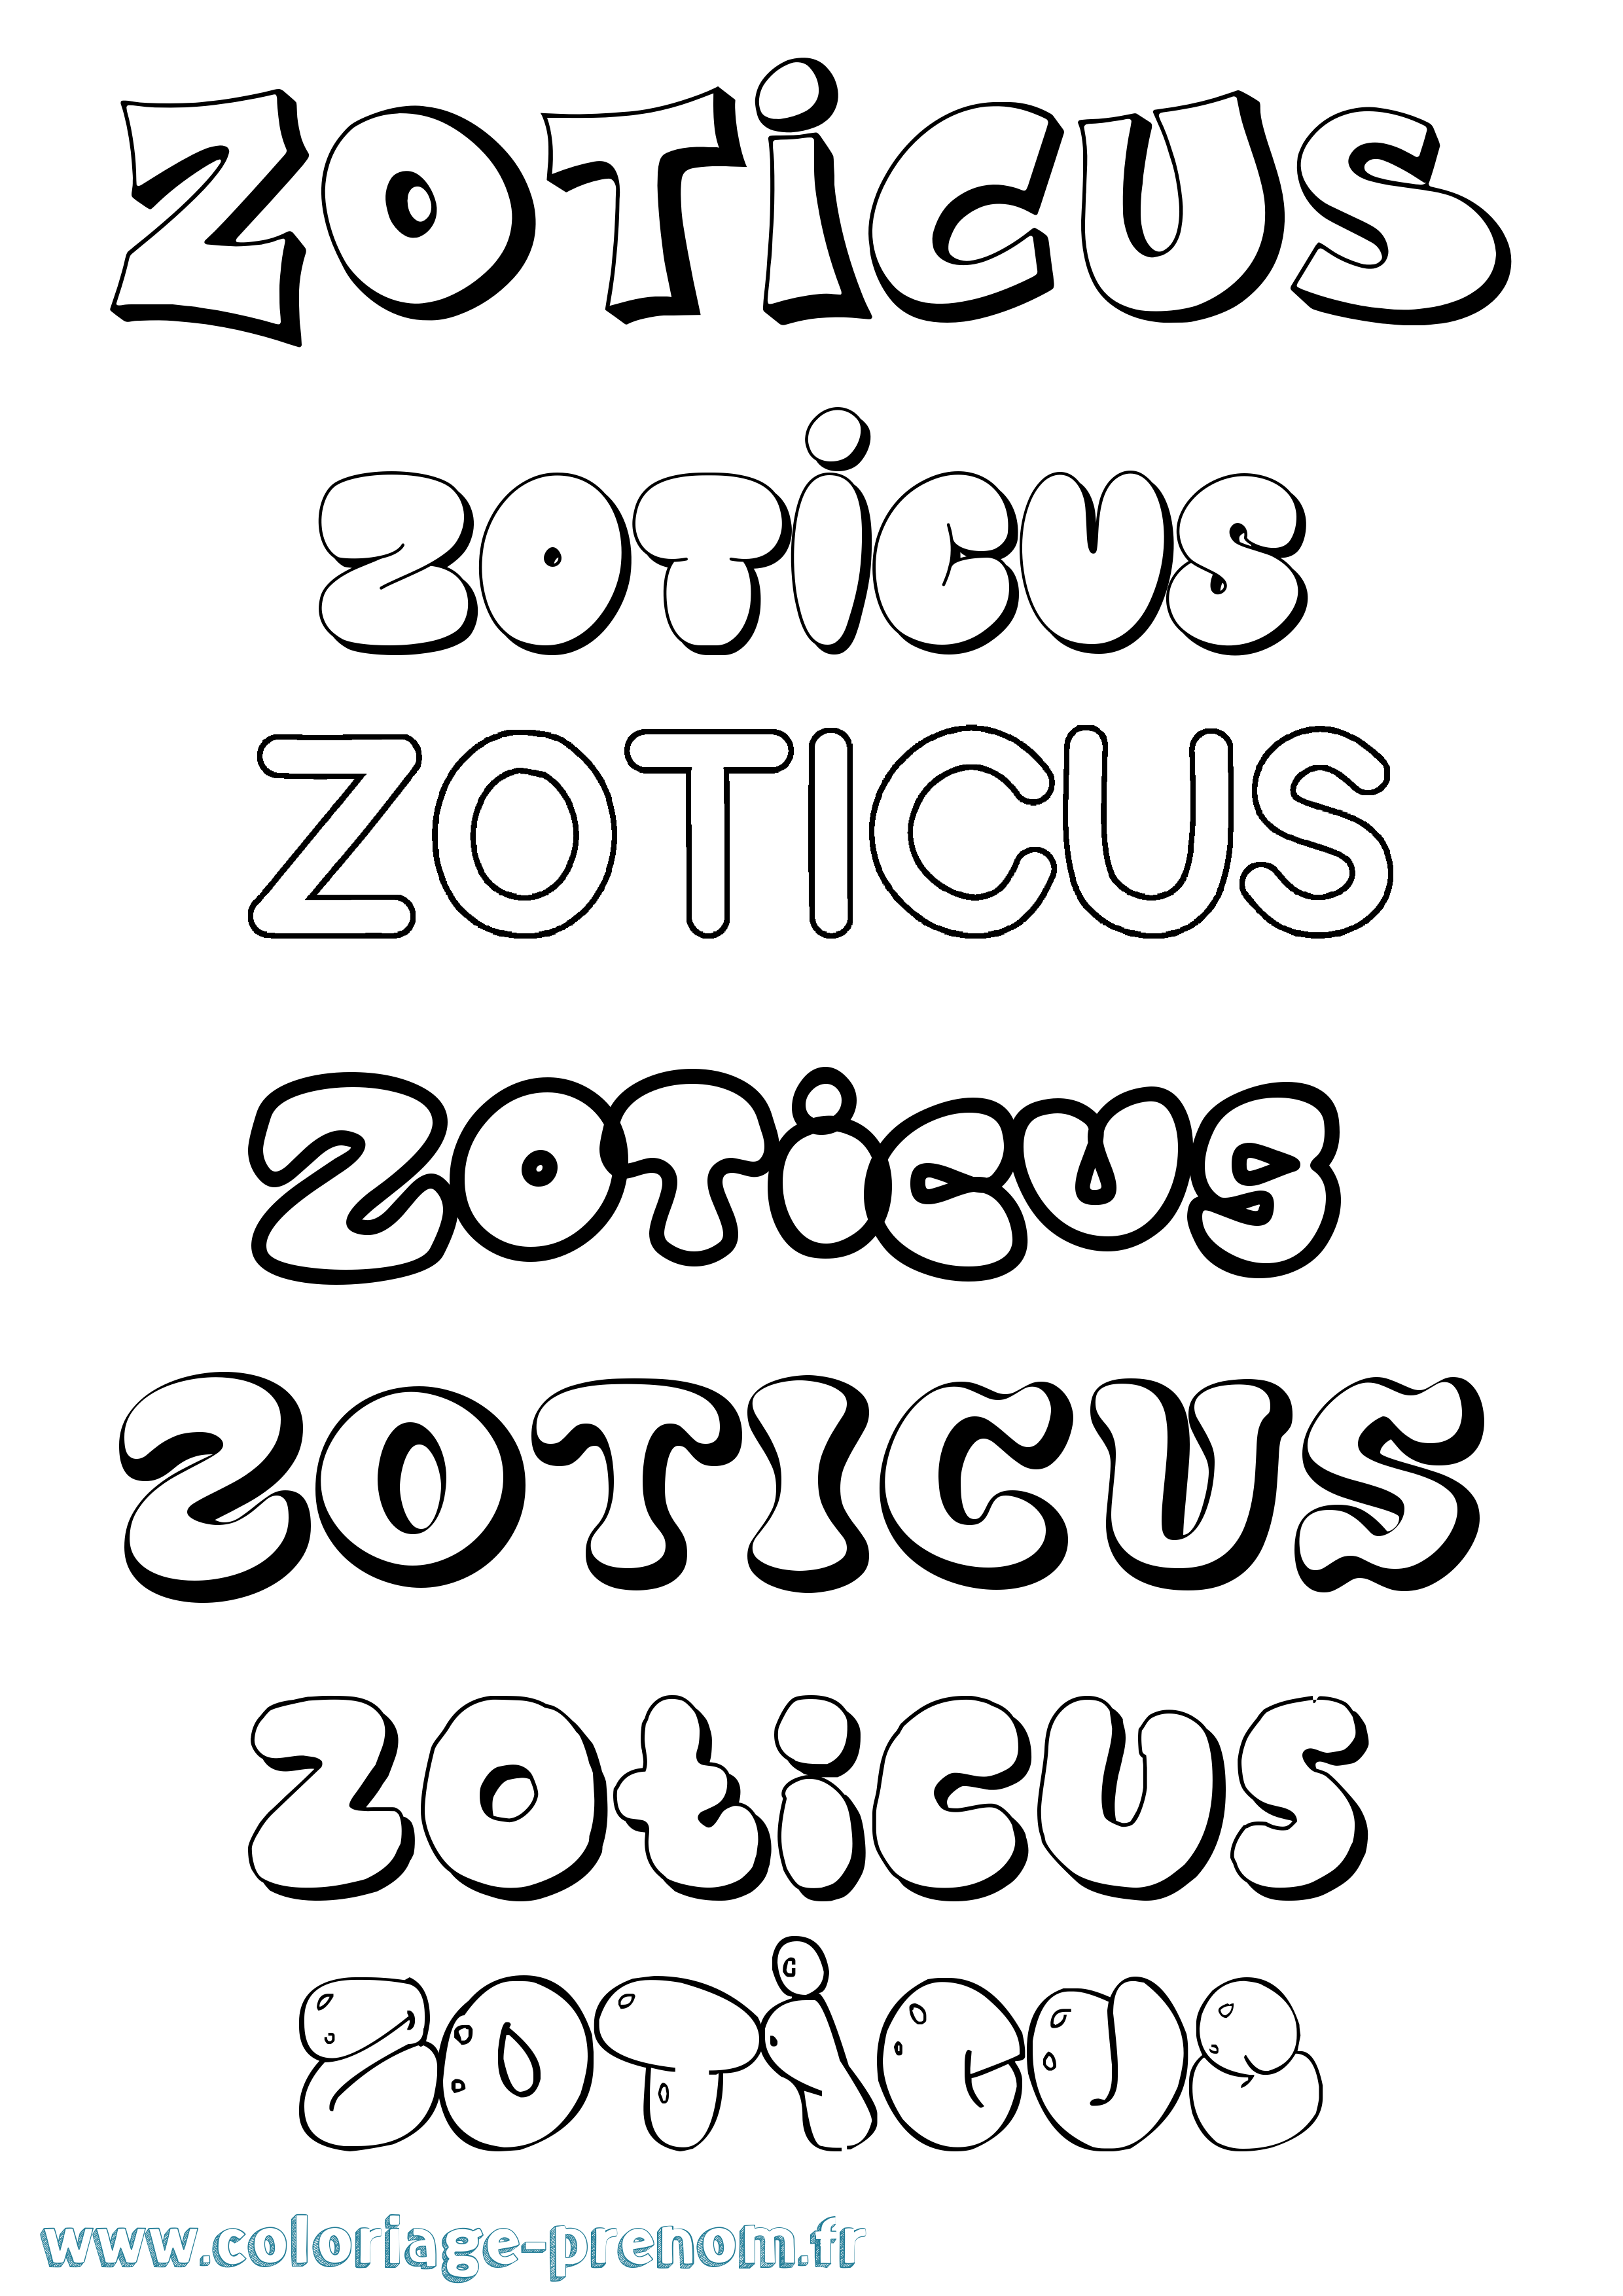 Coloriage prénom Zoticus Bubble